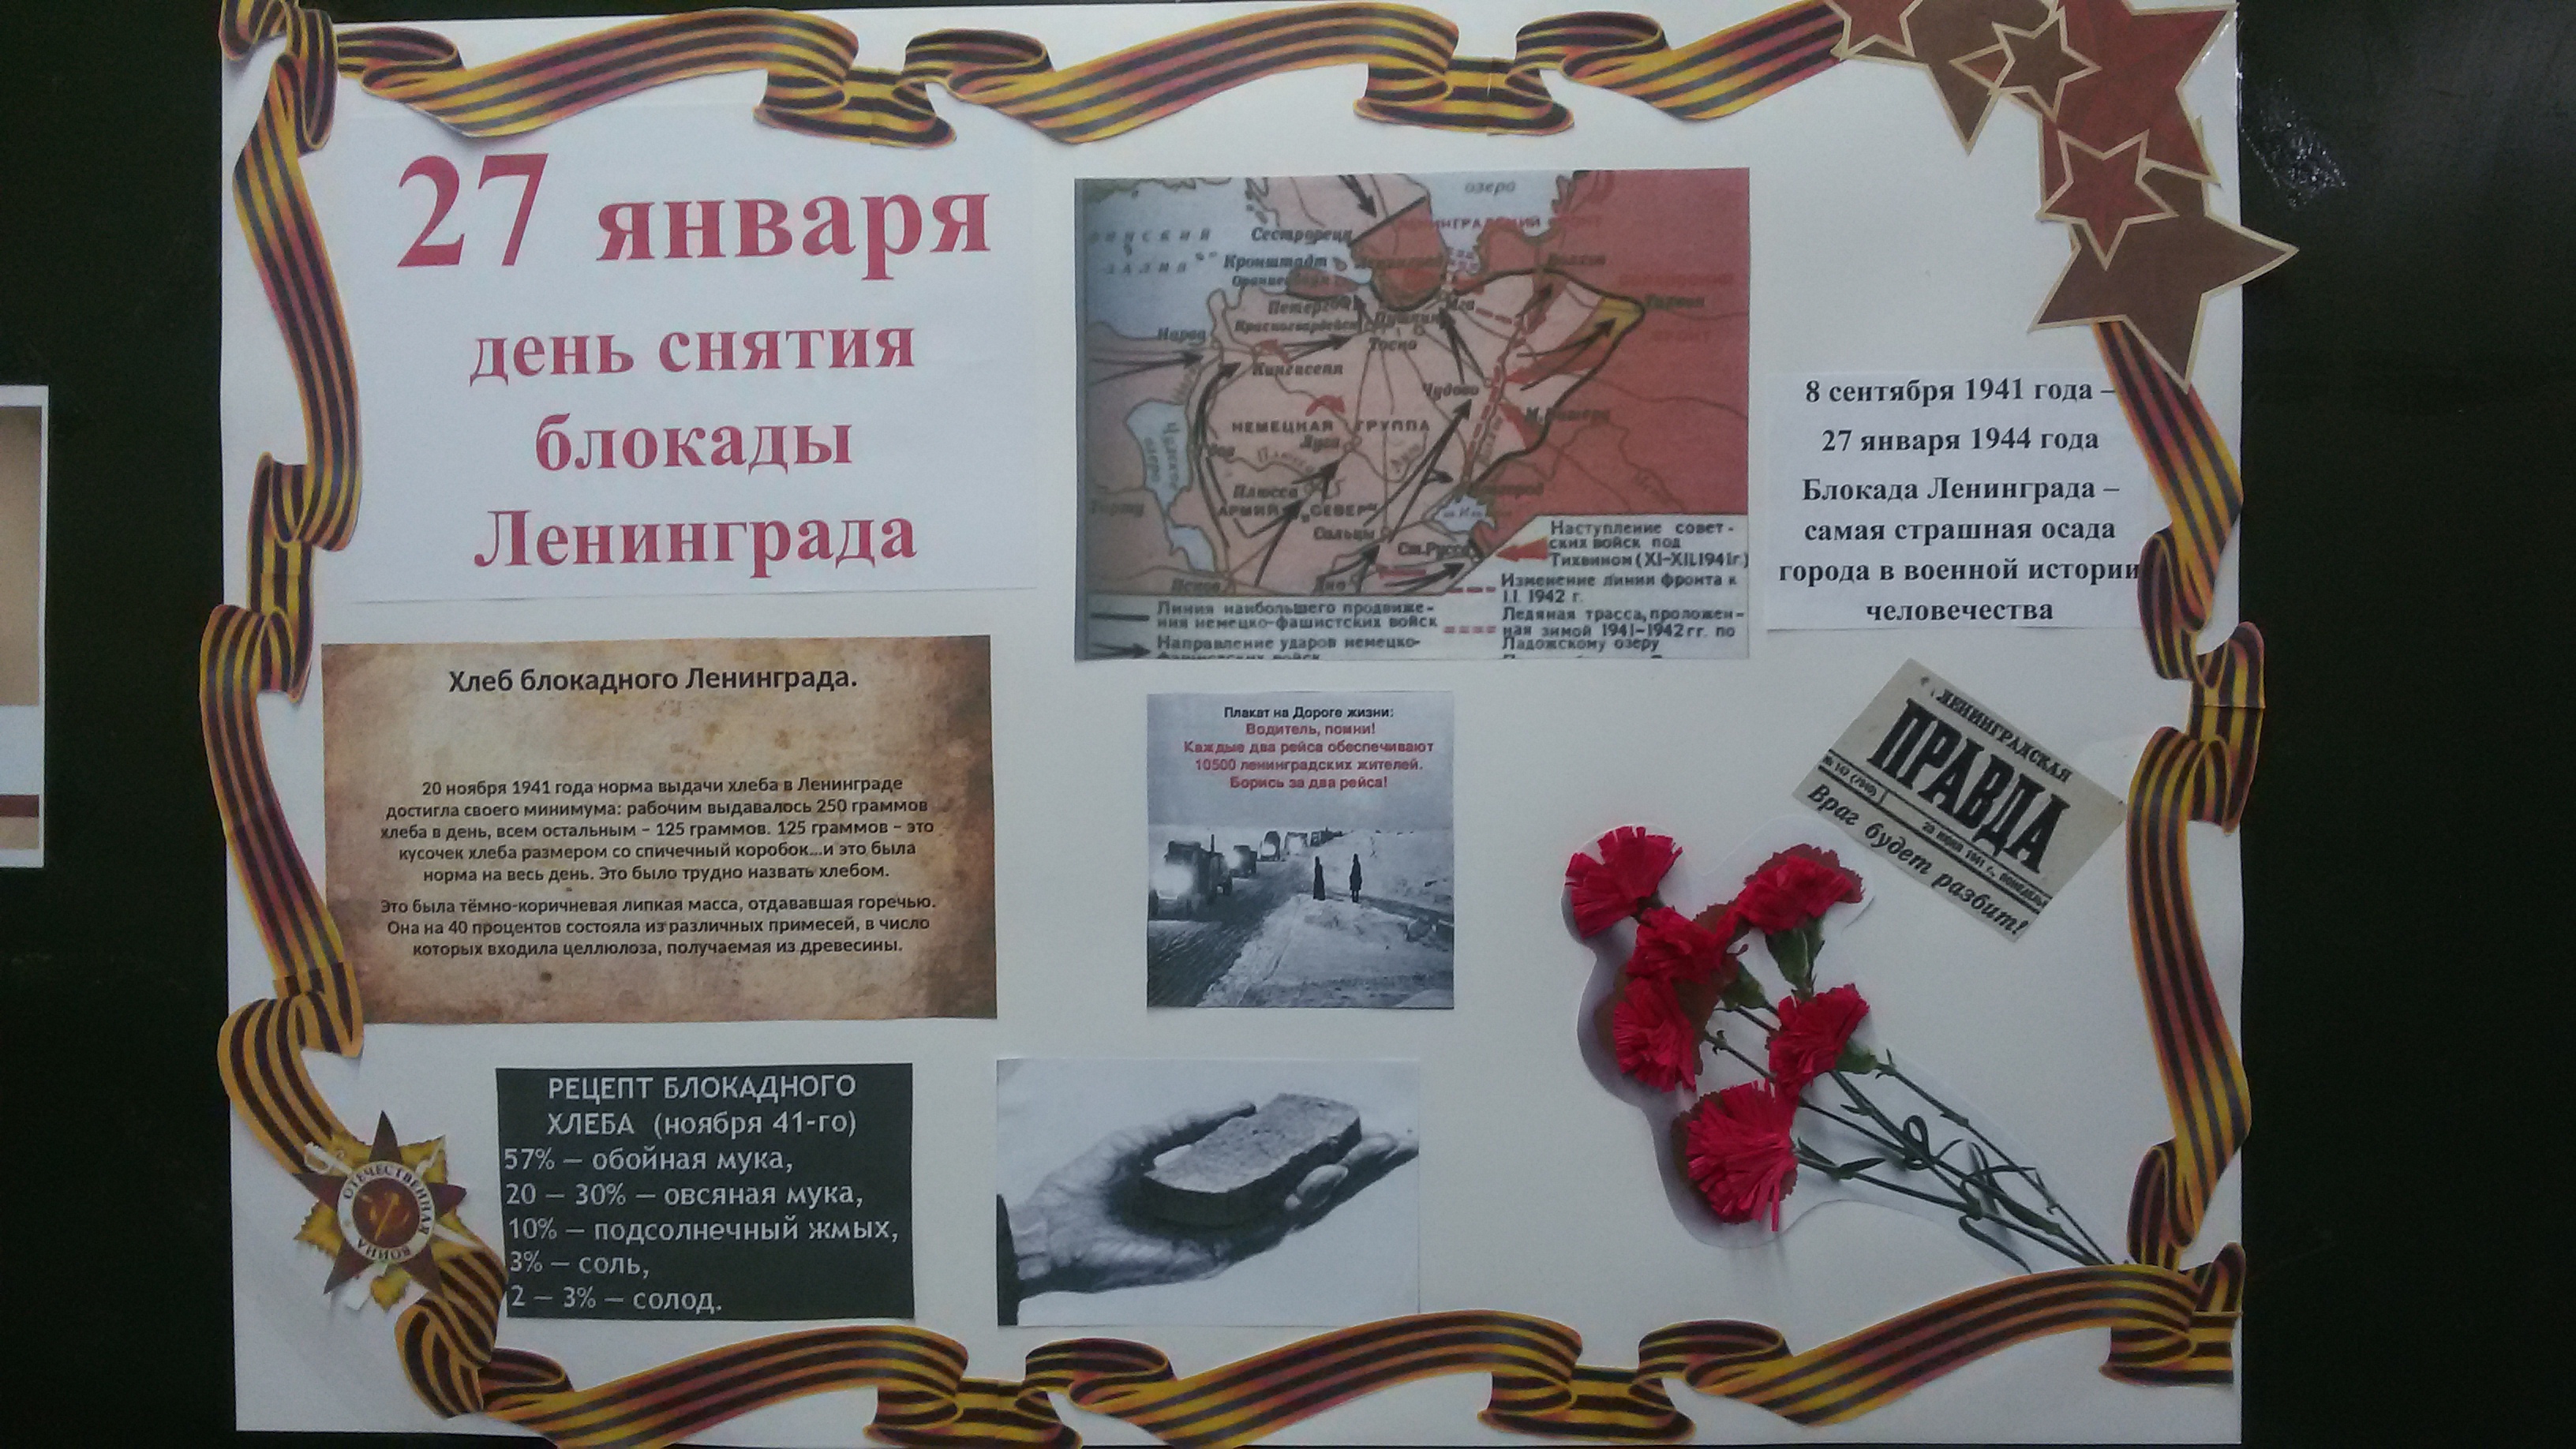 27 Января день снятия блокады Ленинграда плакат